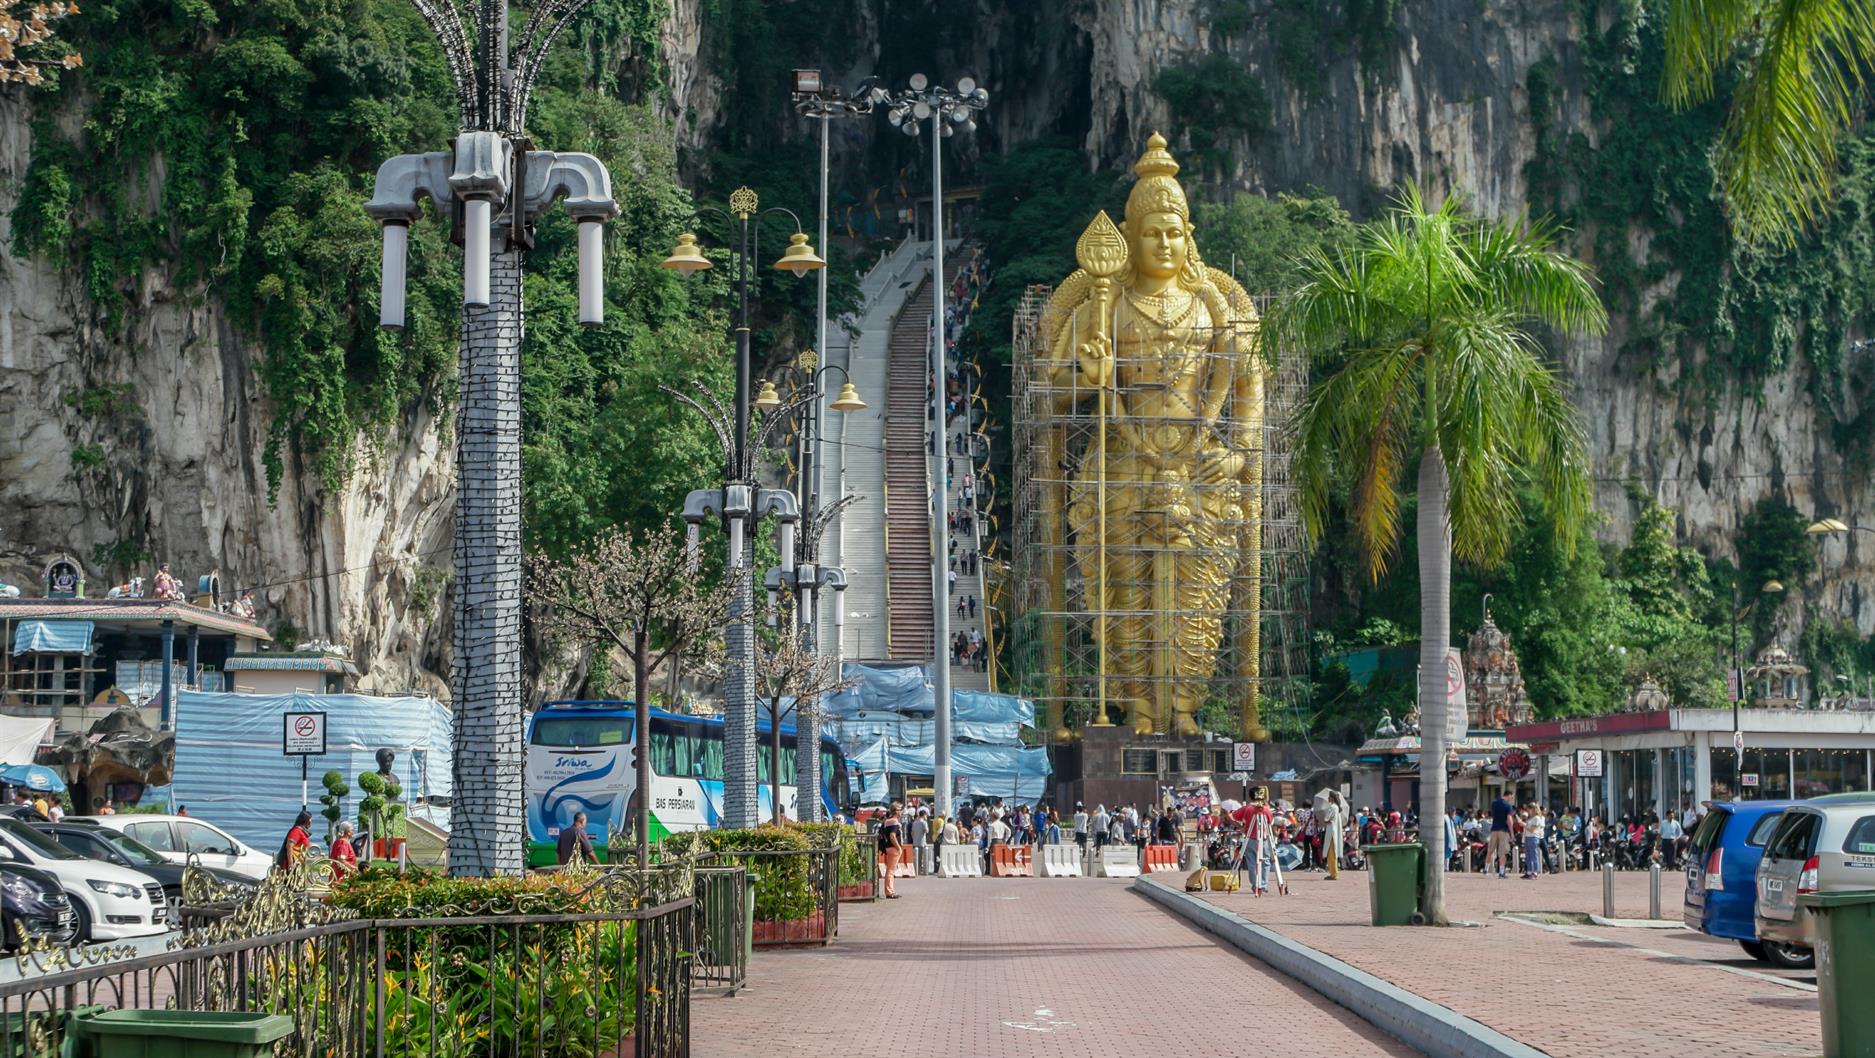 Alleine schon die riesige goldene Statue am Eingang, die dem Hindu-Gott "Murugan" gewidmet ist, ist schon recht beeindruckend. Leider ist sie komplett von einem Baugerüst umgeben. Im Hintergrund kann man die Treppe sehen, welche man benutzen muss, um in die Höhlen zu gelangen. Da ist zuerst einmal ein wenig Fitness gefragt, denn bis zur Haupthöhle, der "Cathedral Cave", musste man nicht weniger als 272 Stufen erklimmen.